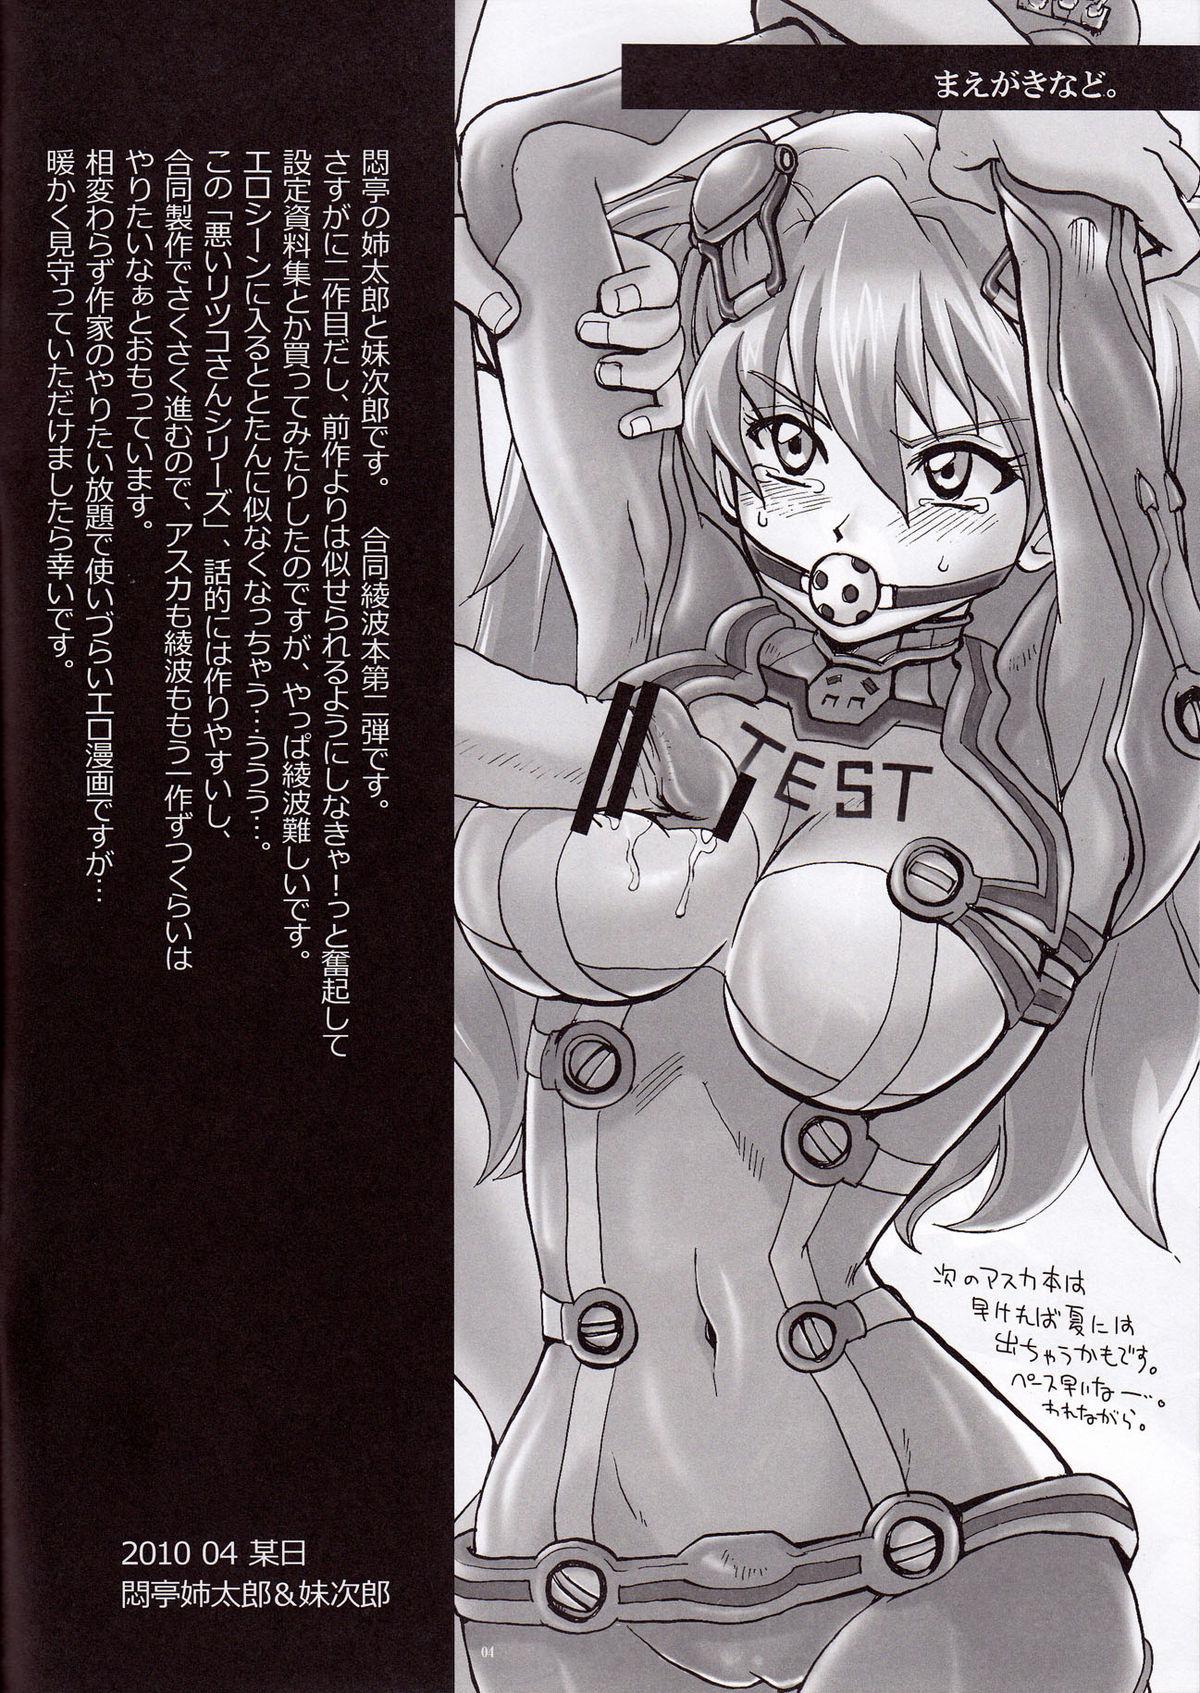 Naked Ayanami Santai - Akagi Hakase no Kaizou Ningyou Settai - Neon genesis evangelion Style - Page 4